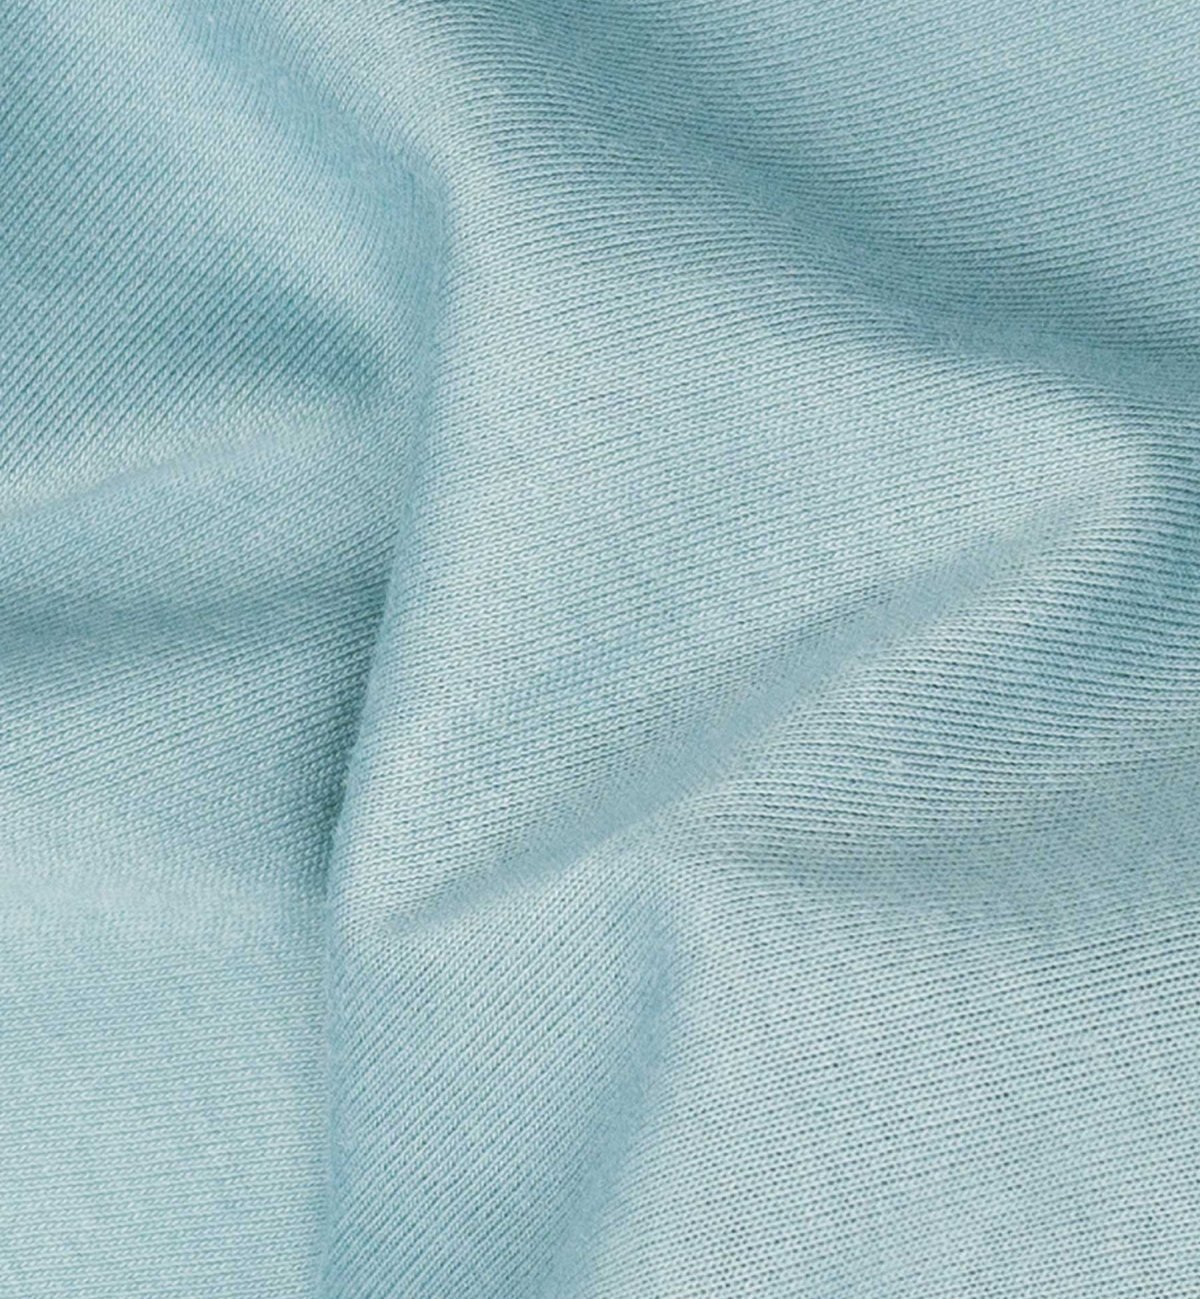 Lençol de baixo algodão orgânico jersey para colchão adulto - Kadolis